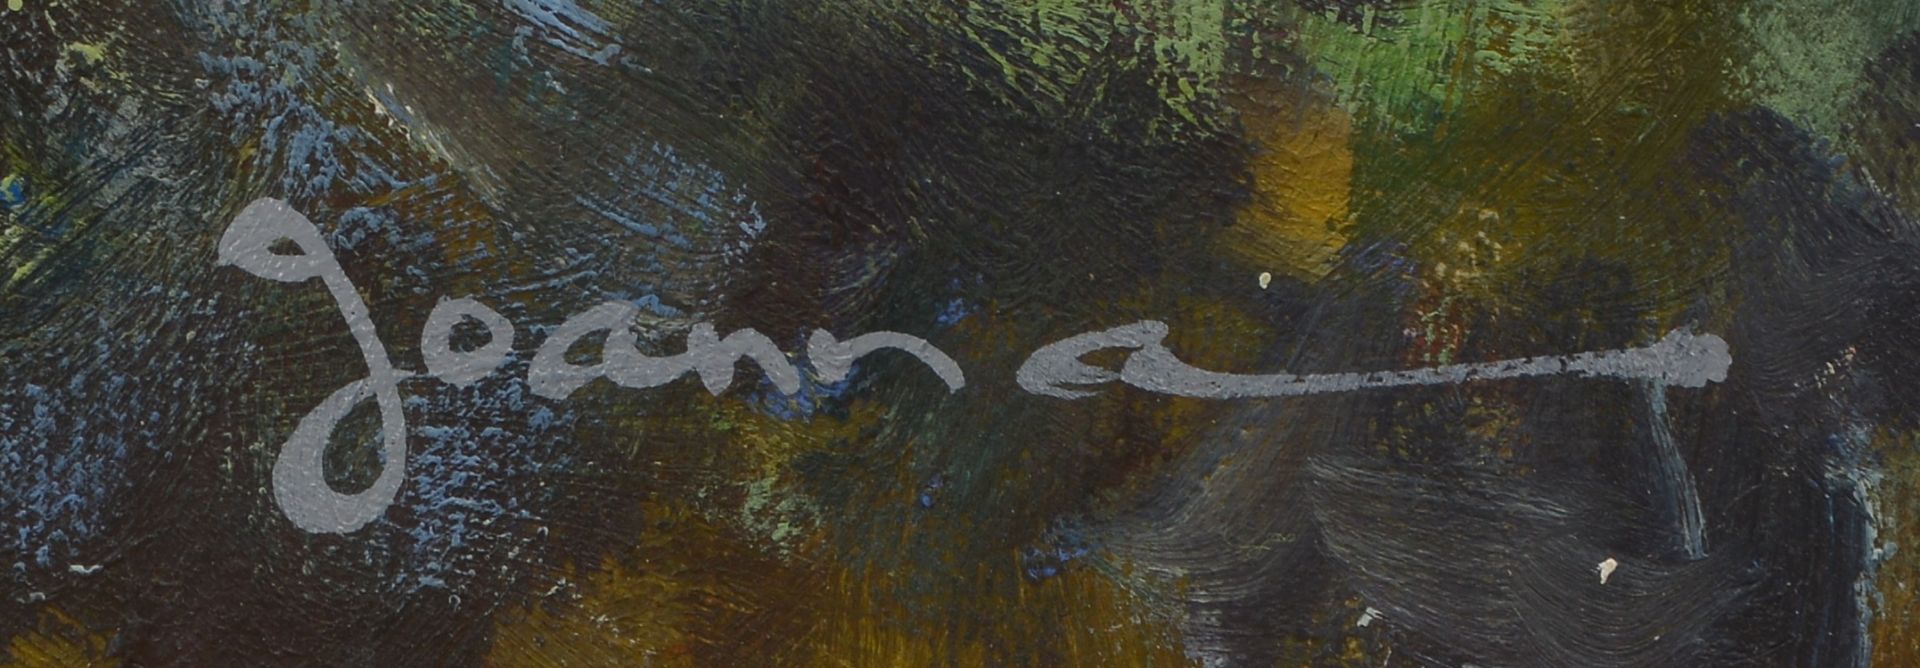 Gemaelde, -Blumenwiese-, Oel/Lw, unten rechts signiert -Joanna-, Bildmasse 50 x 60 cm, Rahmenmasse 7 - Image 2 of 2